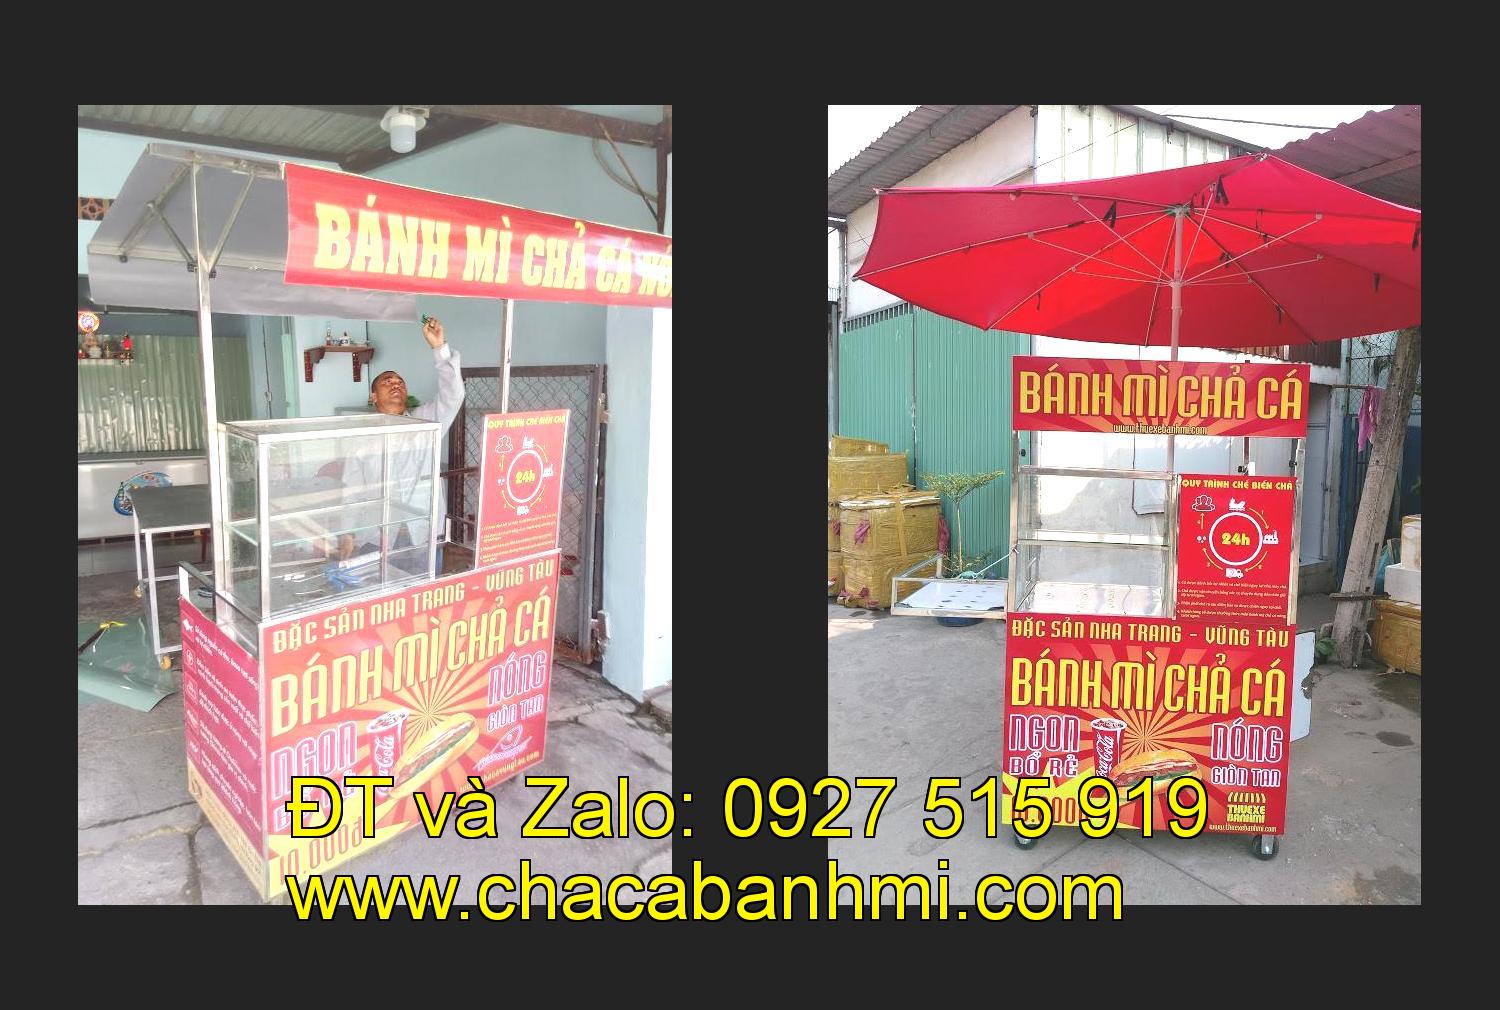 Bán xe bánh mì chả cá tại tỉnh Bắc Giang